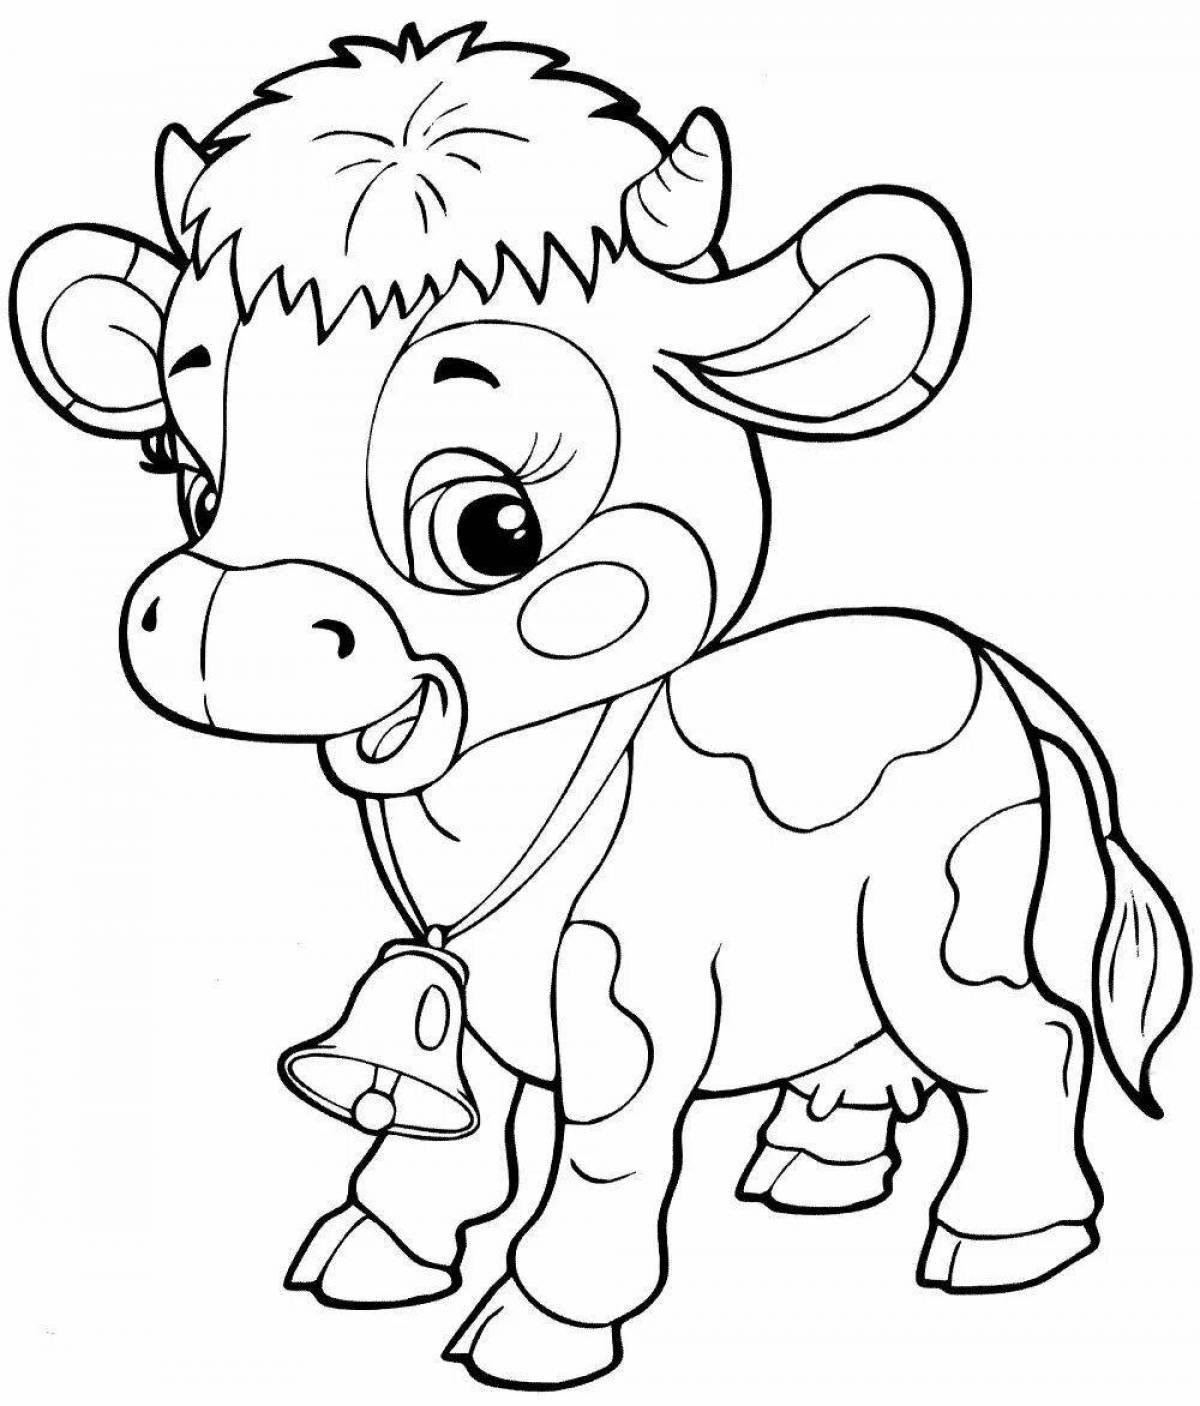 Раскраска коровка для детей 3-4 лет. Веселая коровка разукрашки. Машина с коровкой раскраска для детей. Распечатать коровку раскраску